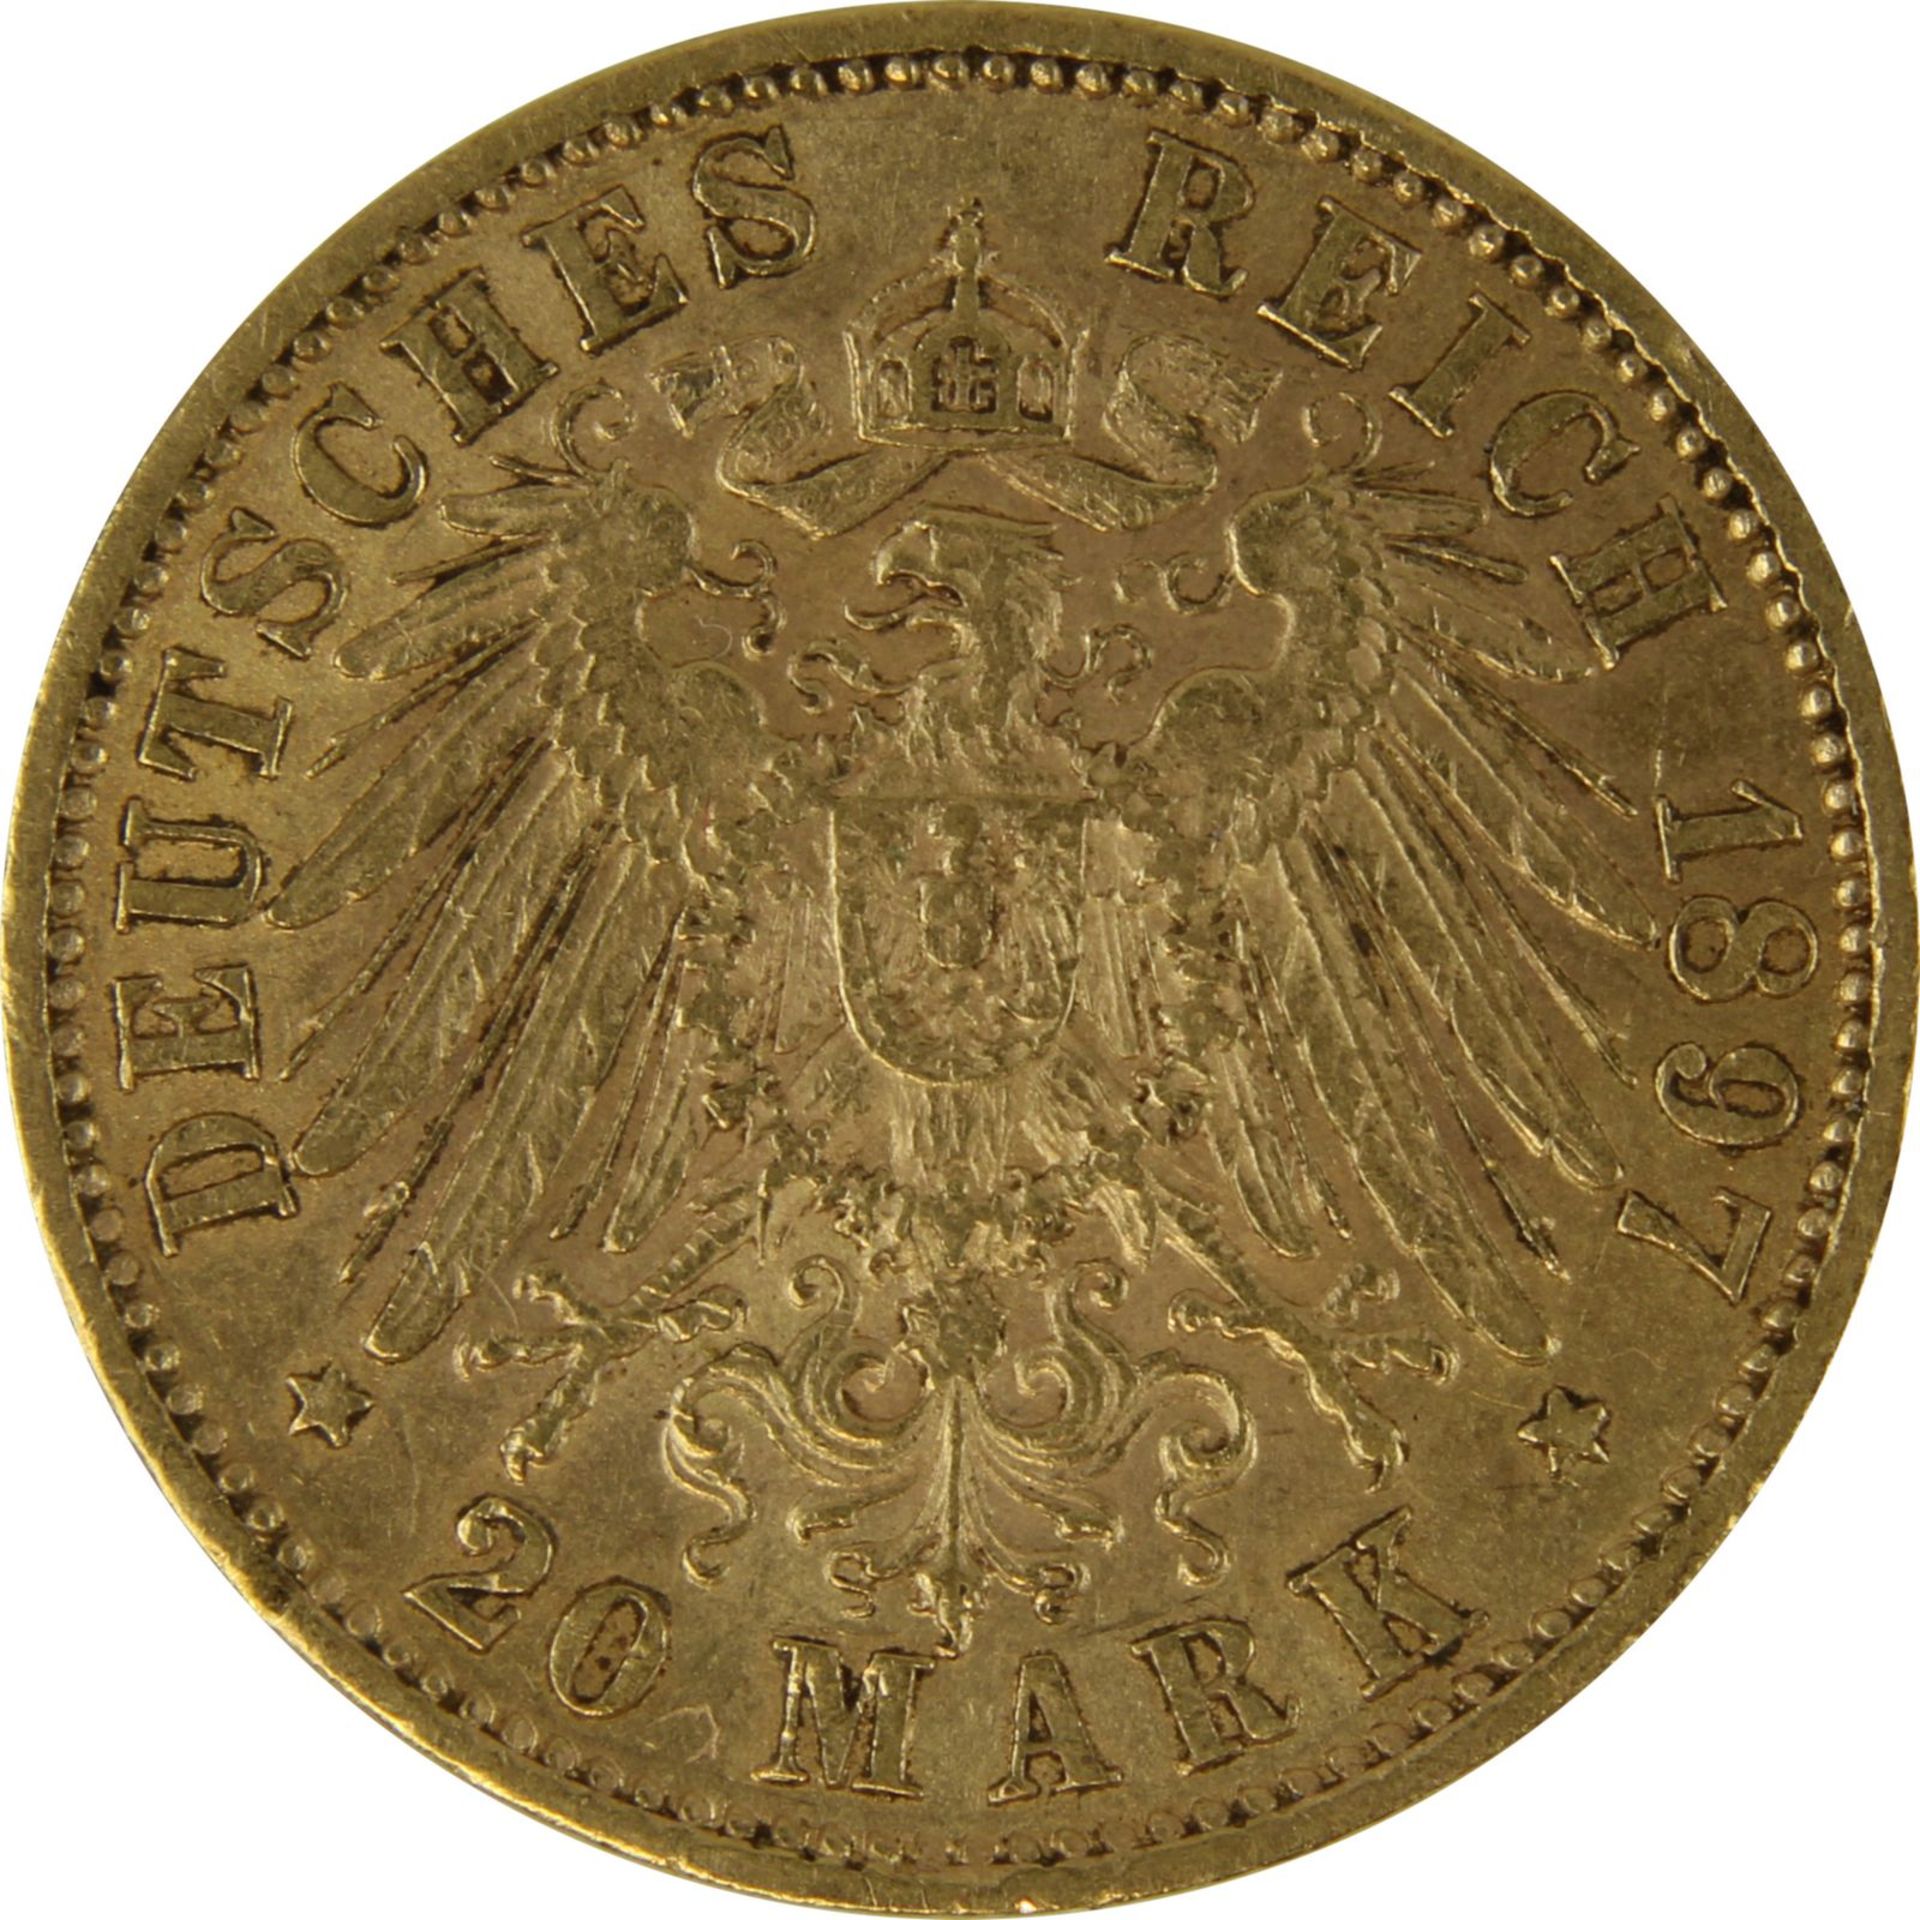 Goldmünze zu 20 Mark, Württemberg - Deutsches Reich 1897, Avers: Kopf Wilhelm II König von - Bild 3 aus 3